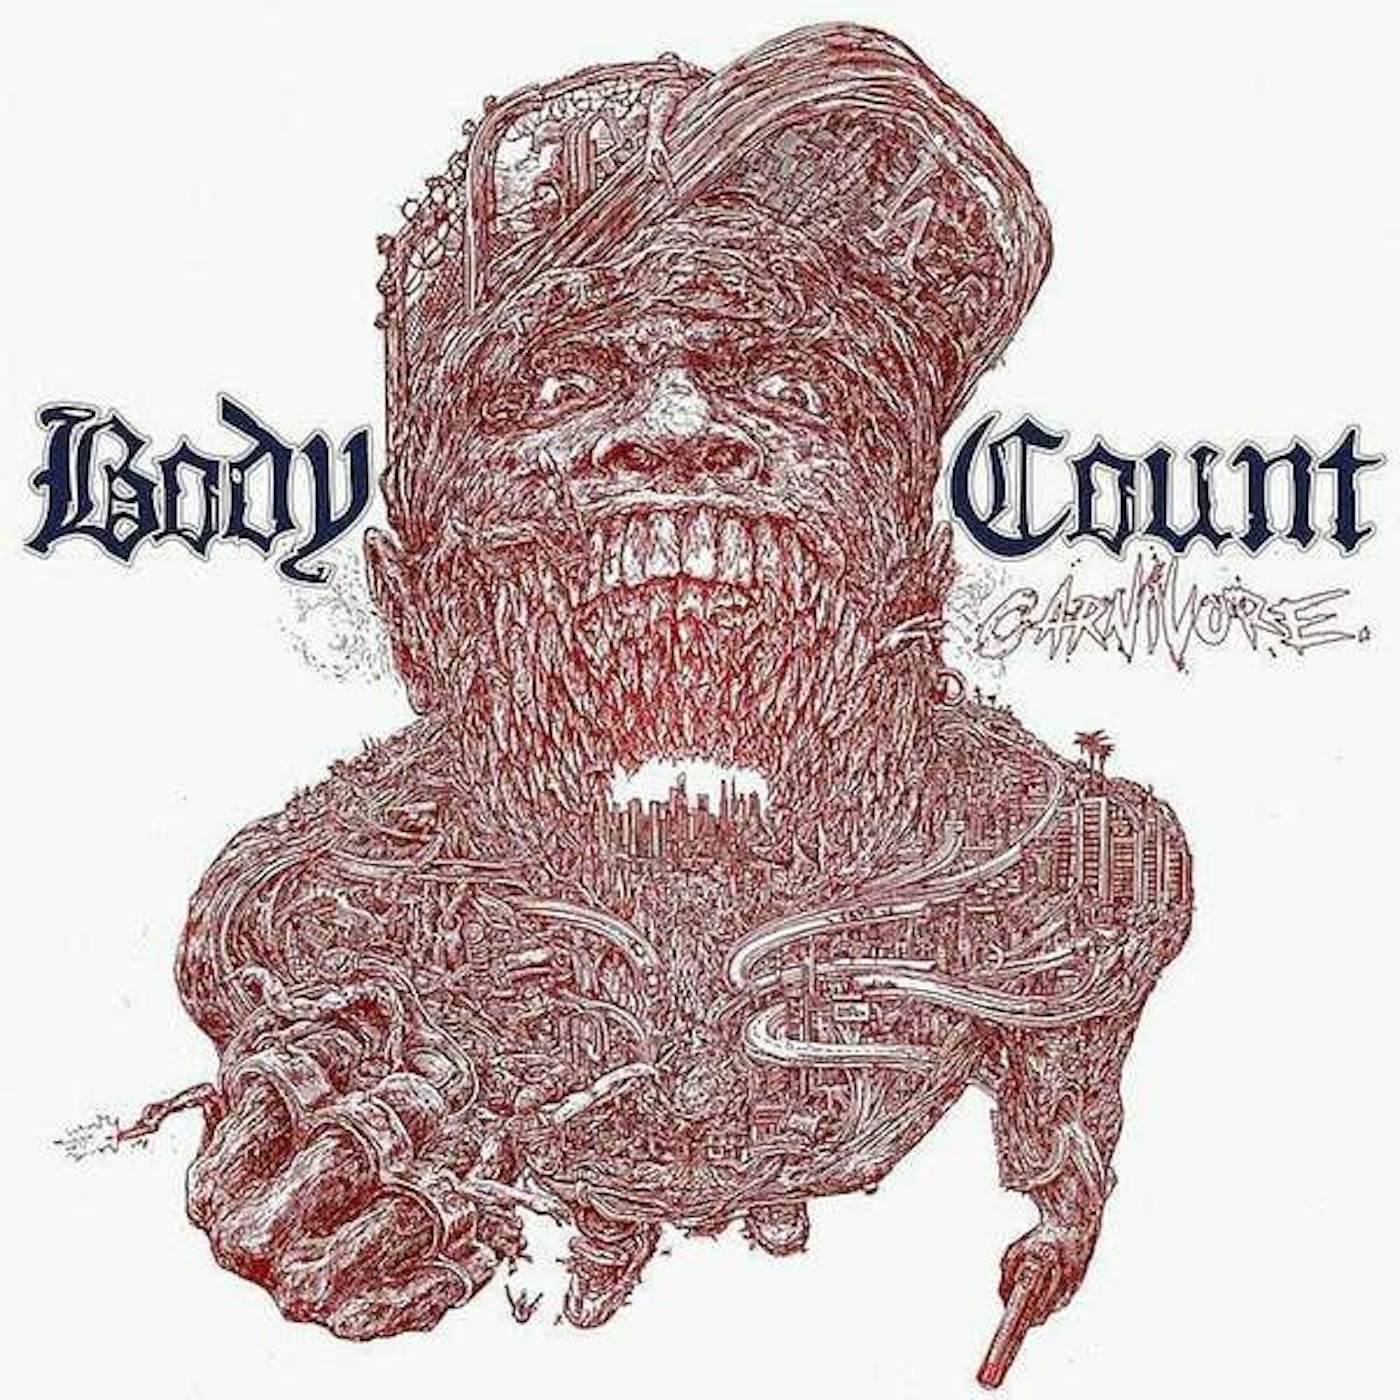 Body Count Carnivore Vinyl Record